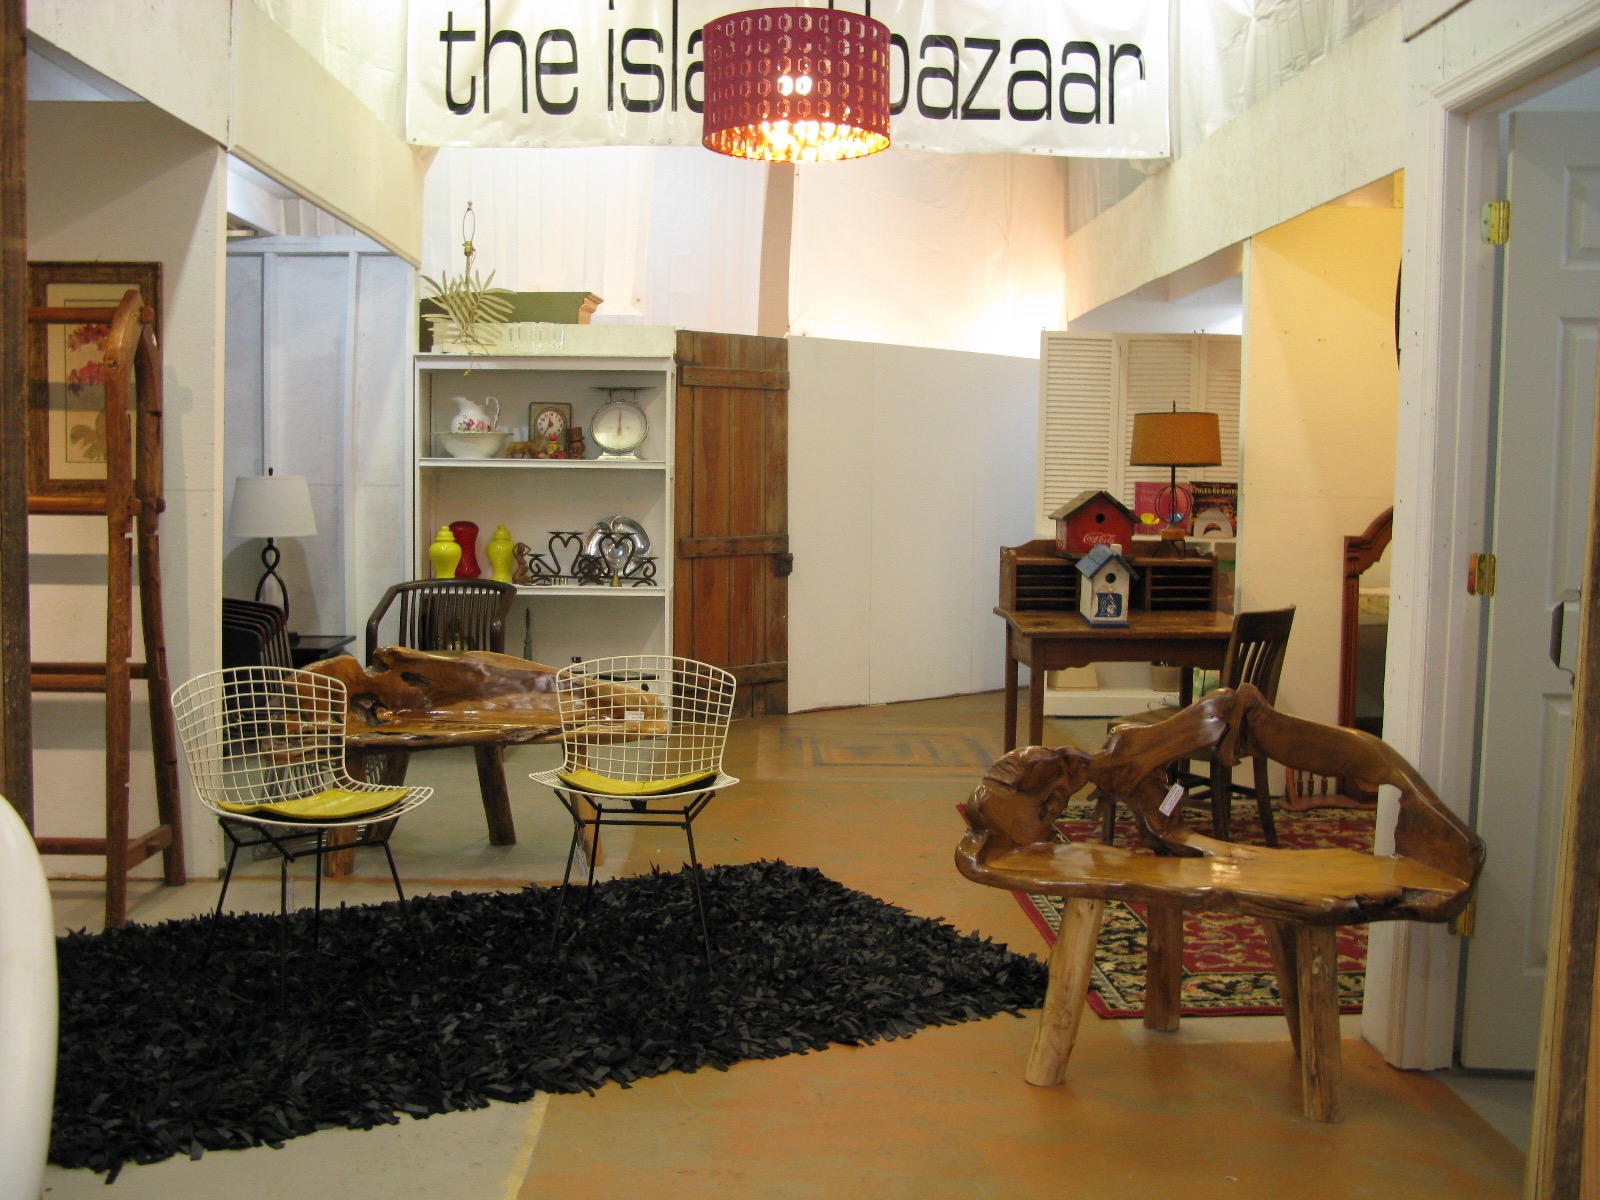 The Island Bazaar